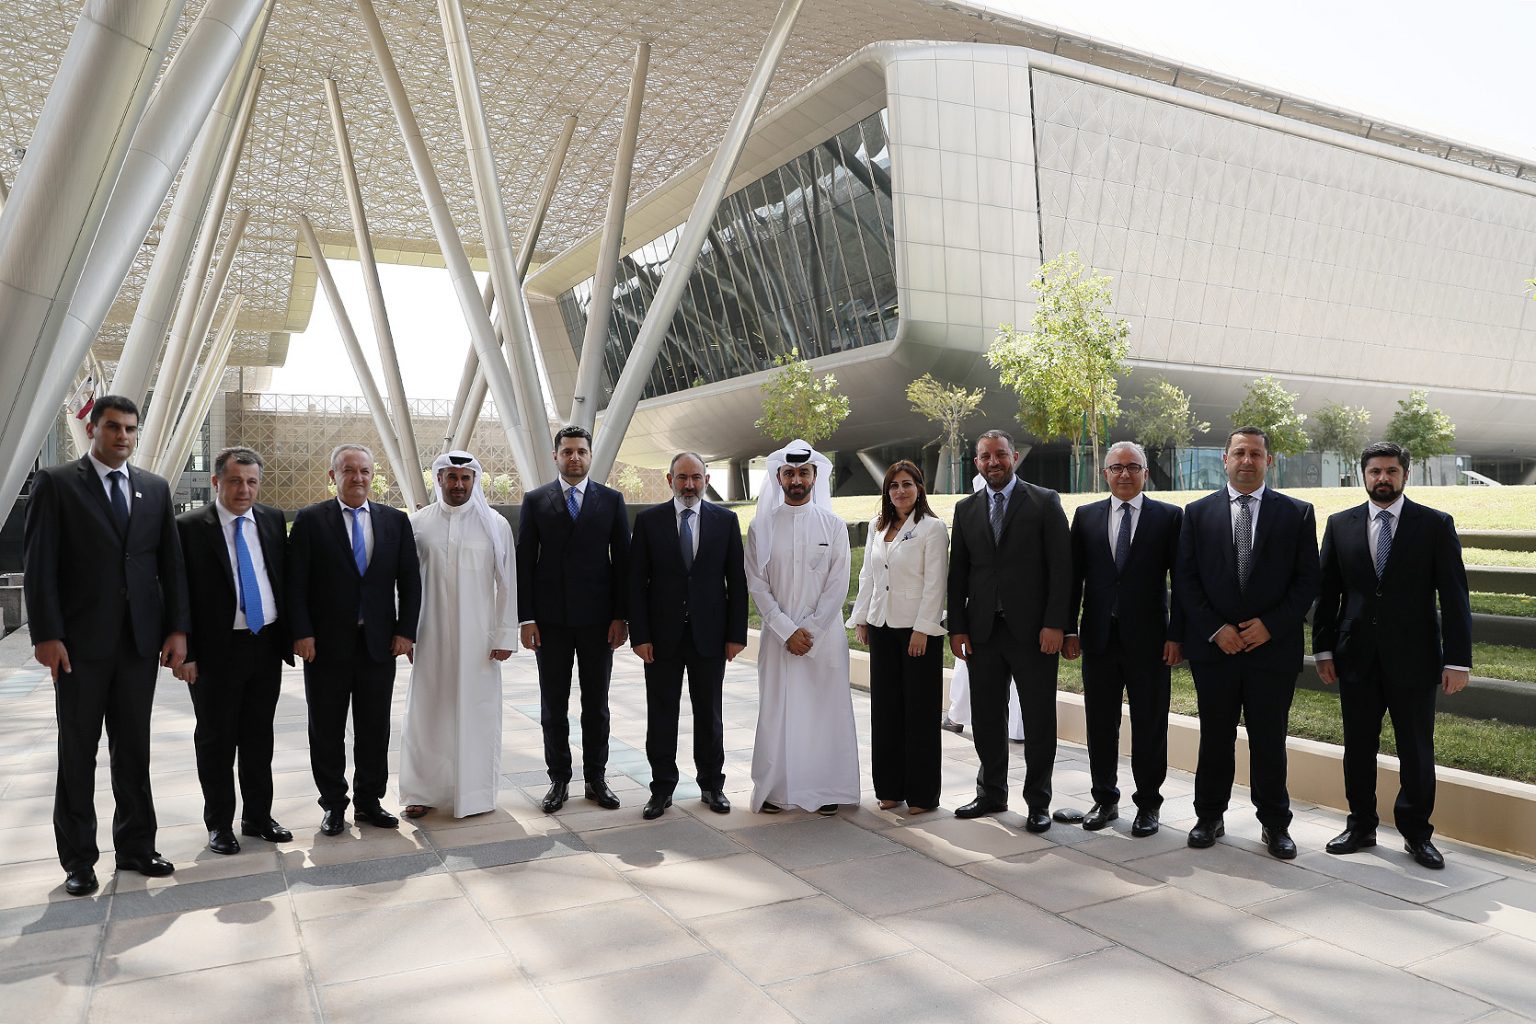 Փաշինյանն այցելել է Qatar Foundation հիմնադրամ և Կատարի գիտության ու տեխնոլոգիաների կենտրոն